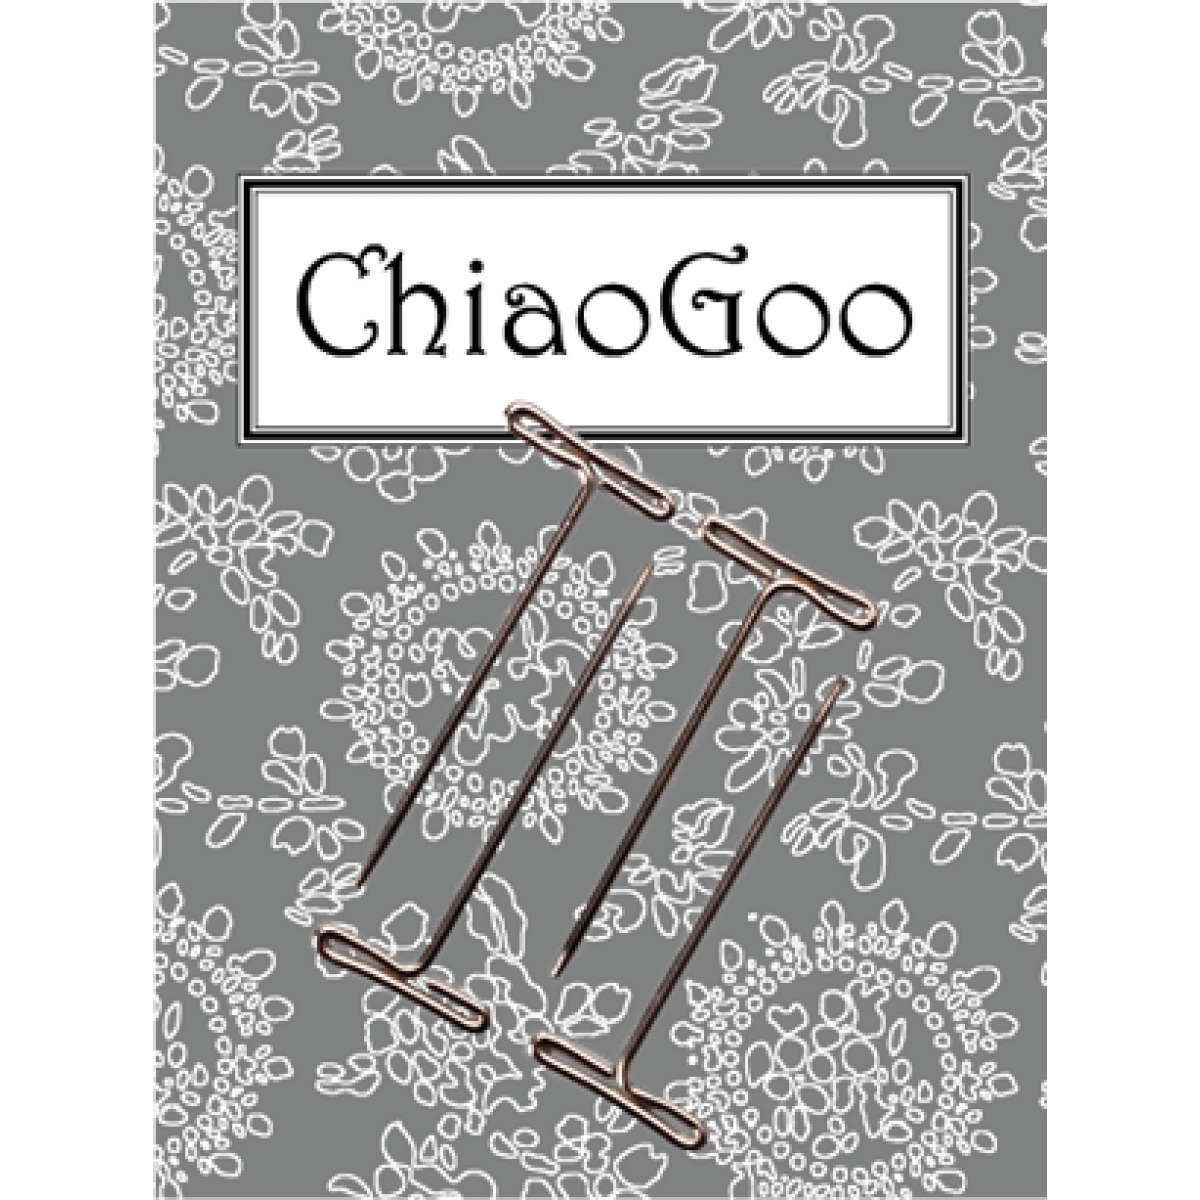 Ключ к ультратонким спицам (лескам) Mini ChiaoGoo